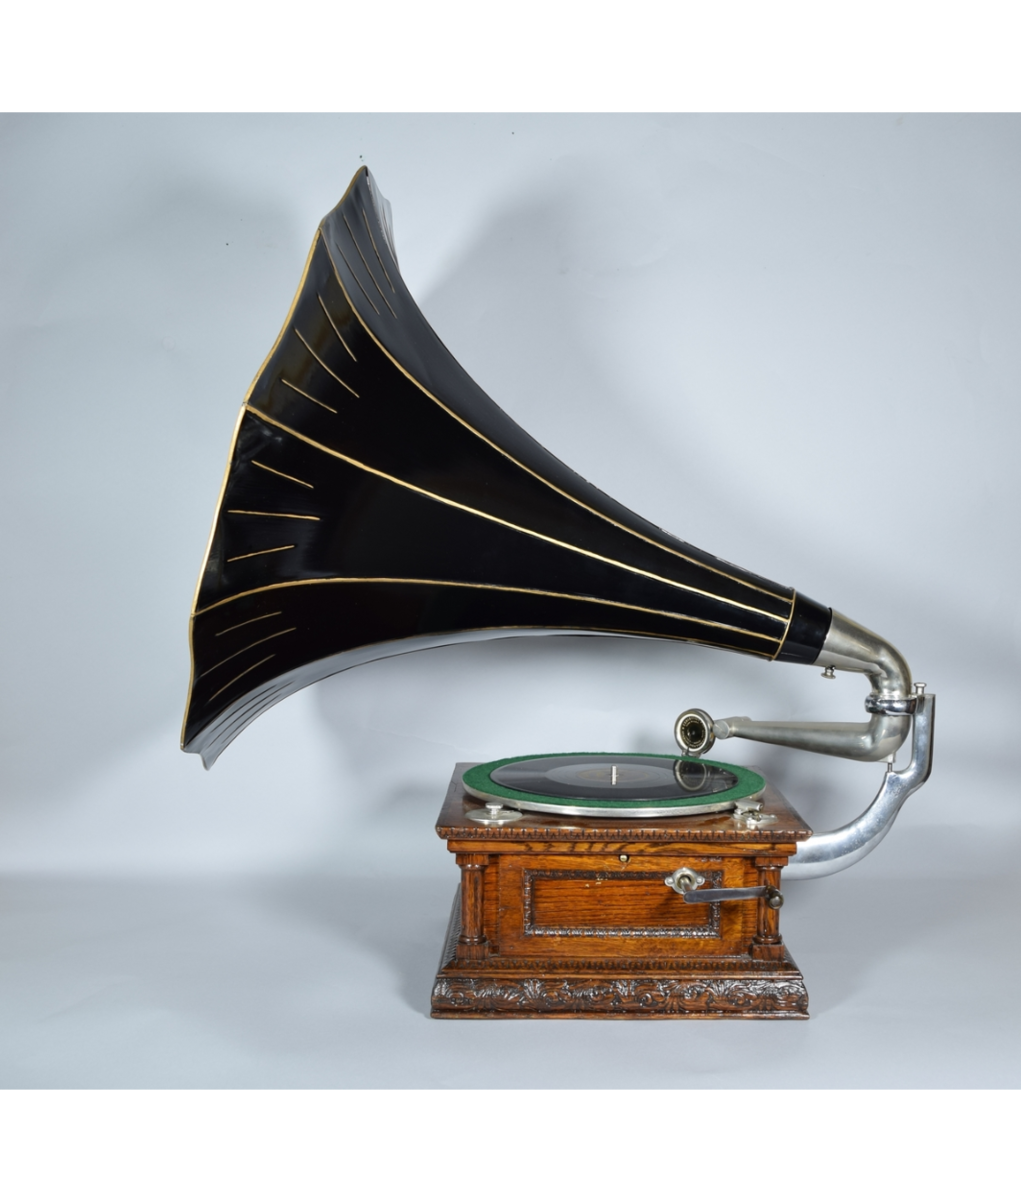 Grammofon "Senior Monarch", produsert av The Gramophone & Typewriter Ltd., London, ca 1908